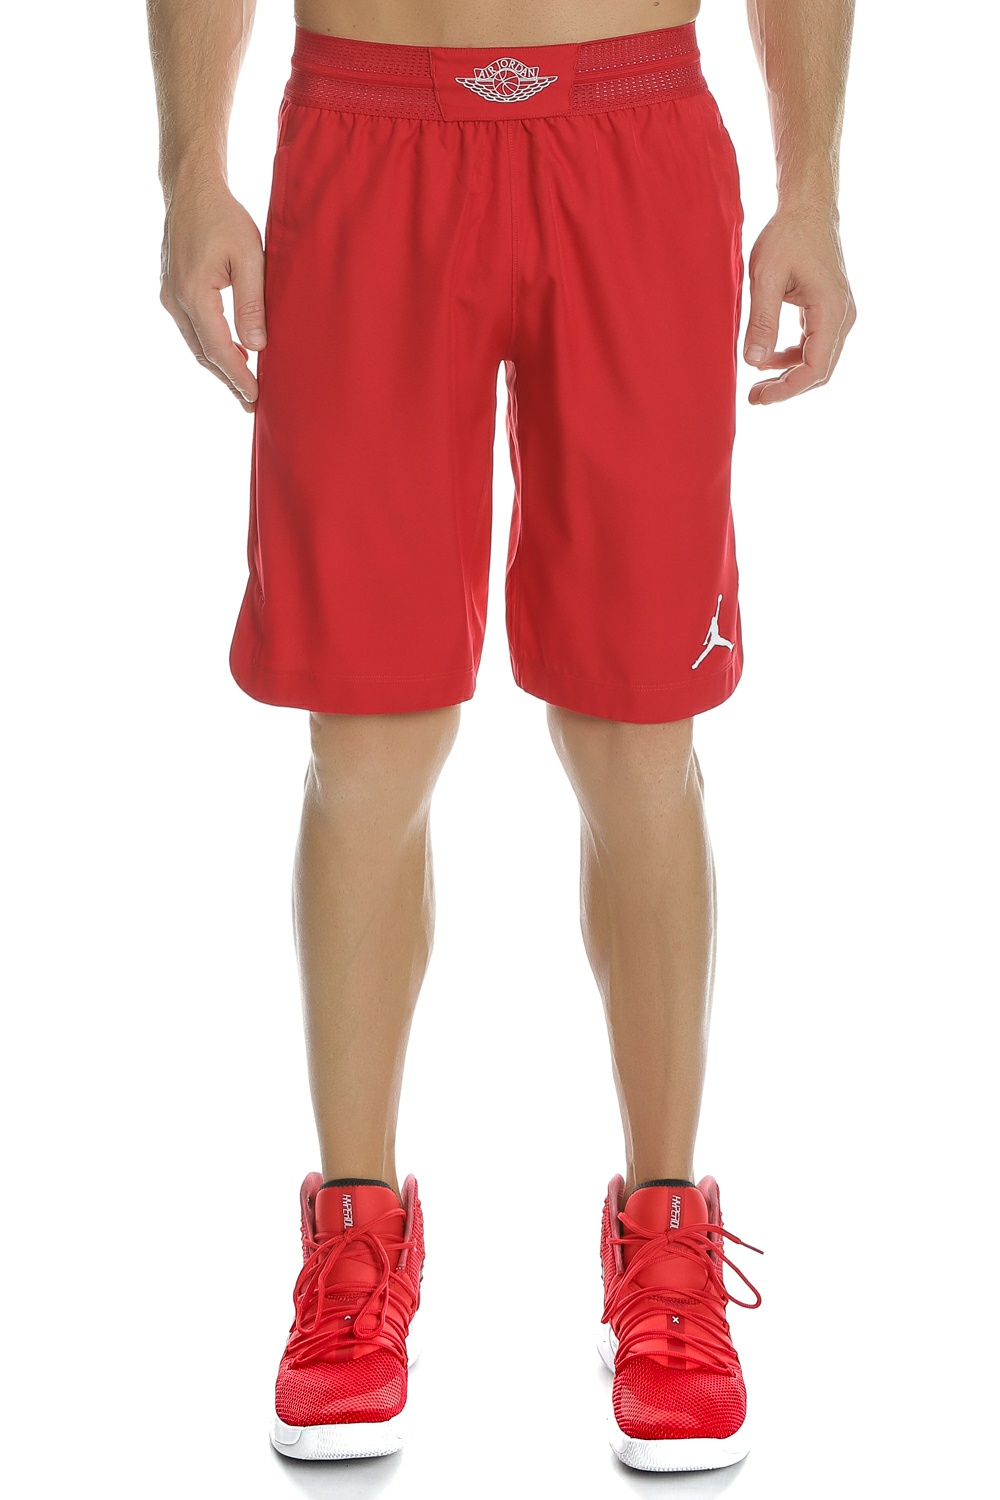 Ανδρικά/Ρούχα/Σορτς-Βερμούδες/Αθλητικά NIKE - Ανδρική βερμούδα μπάσκετ NIKE ULT FLIGHT κόκκινη